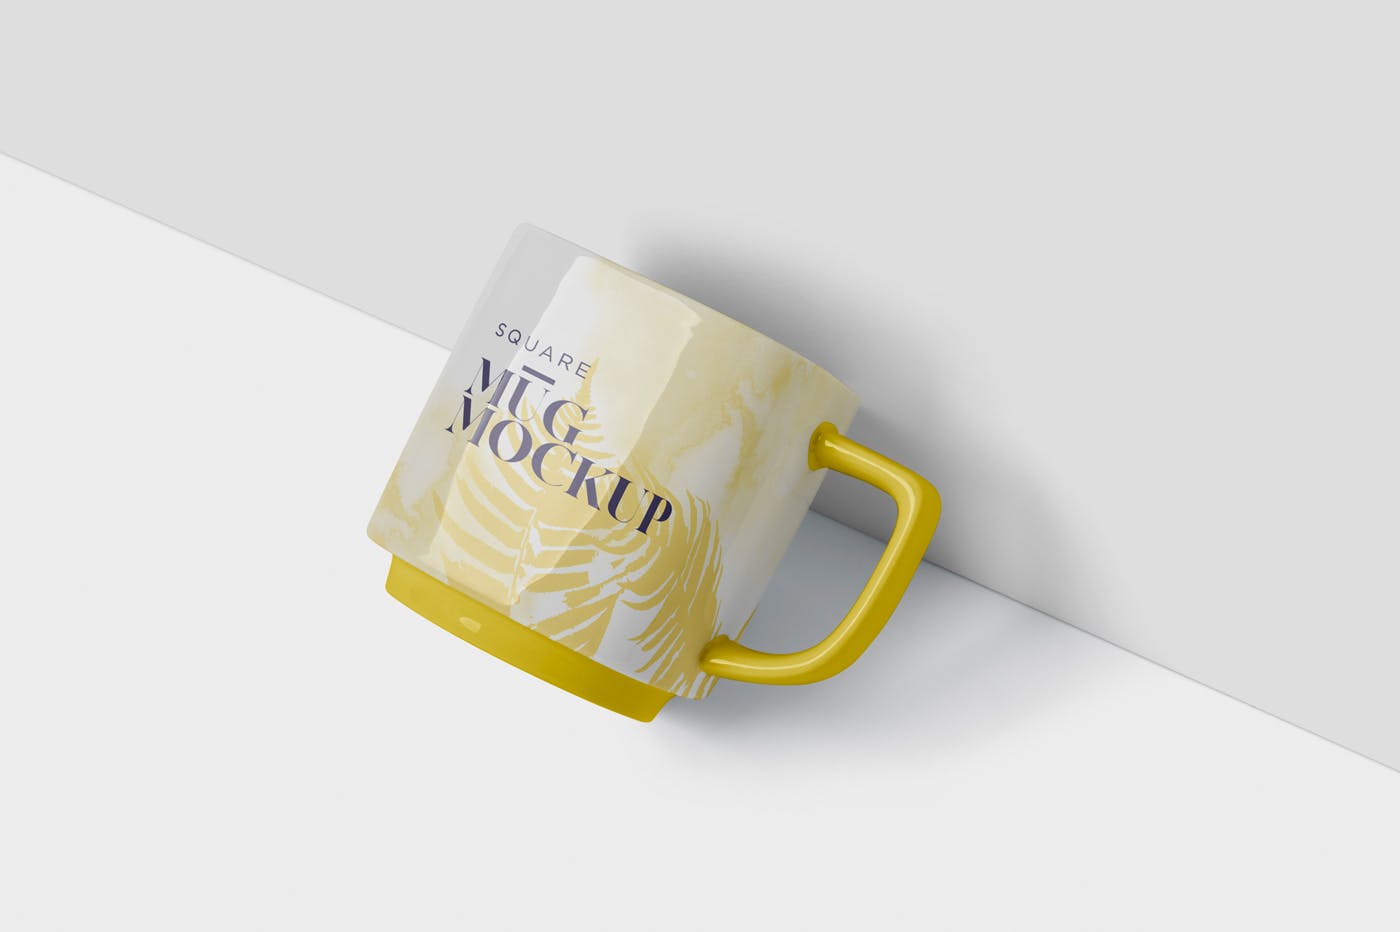 方形马克杯图案设计素材库精选模板 Mug Mockup – Square Shaped插图(2)